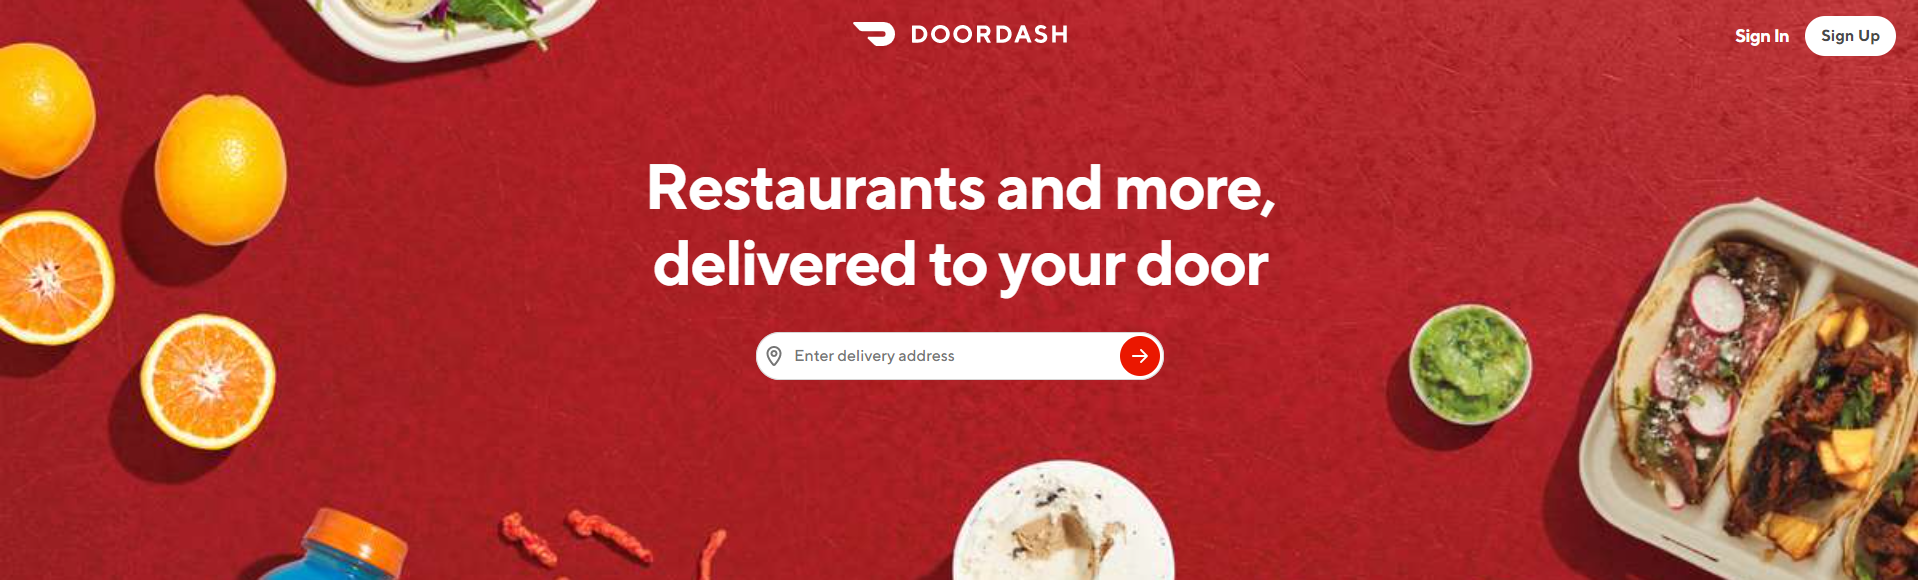 DoorDash - How to Cancel DoorDash Pass